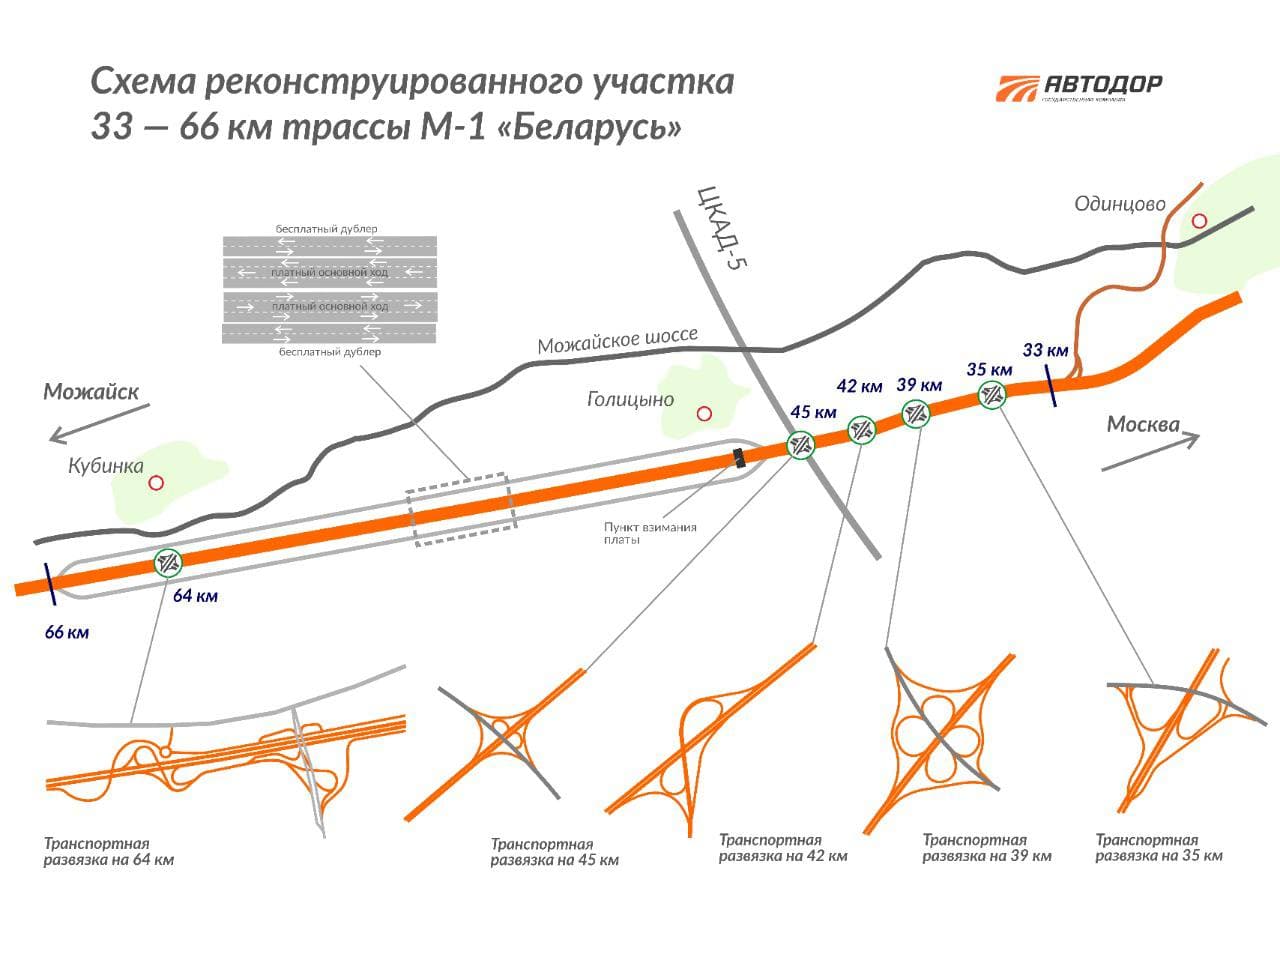 Участок трассы М1 "Беларусь" открыт после реконструкции в Подмосковье